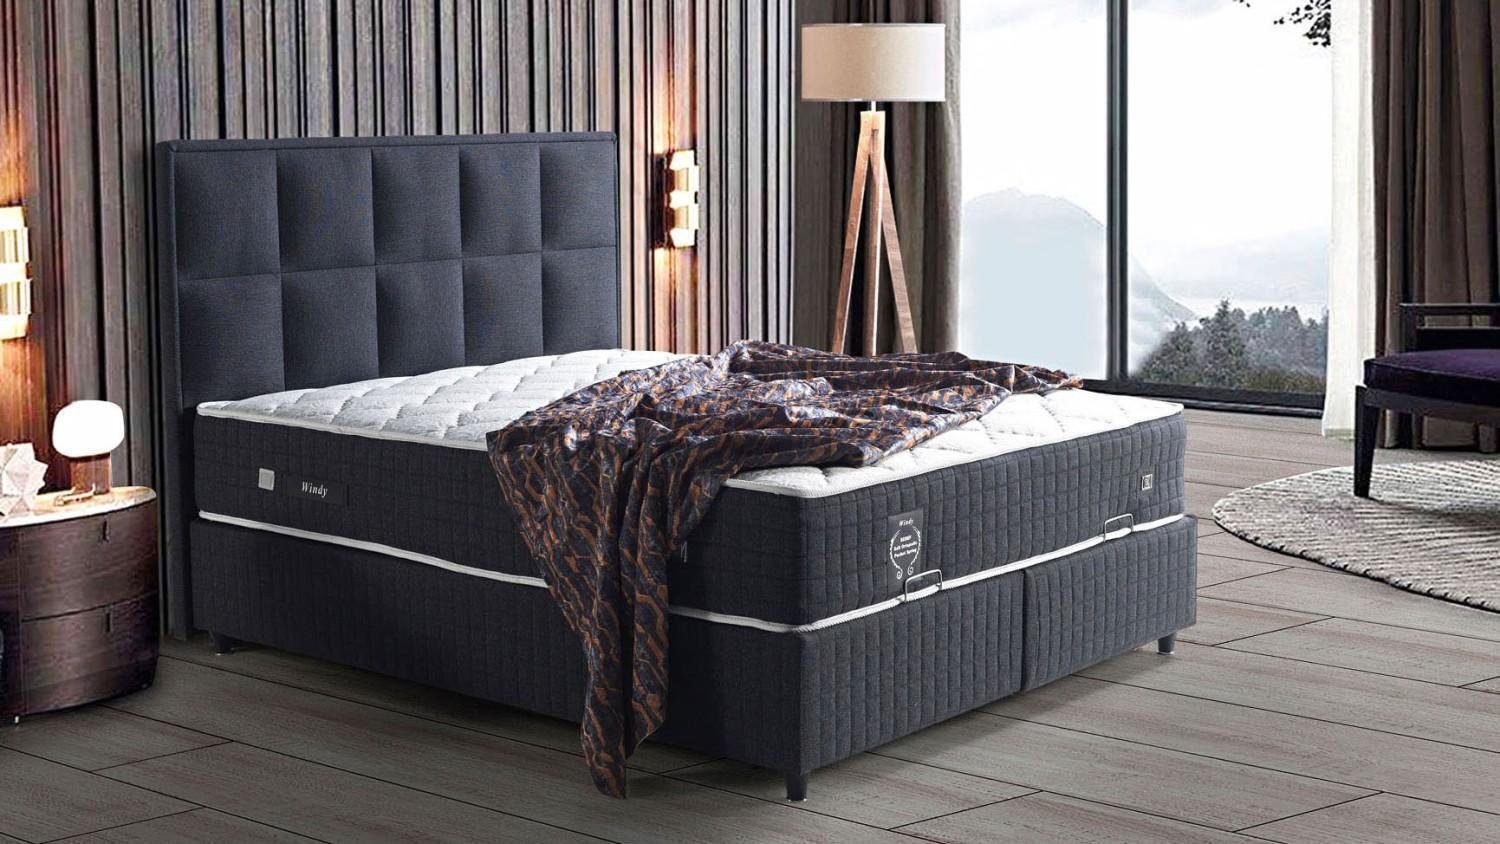 JVmoebel Bett Designer Doppelbett Holz Designer Betten Möbel Schlafzimmer Bett (Bett), Made In Europe